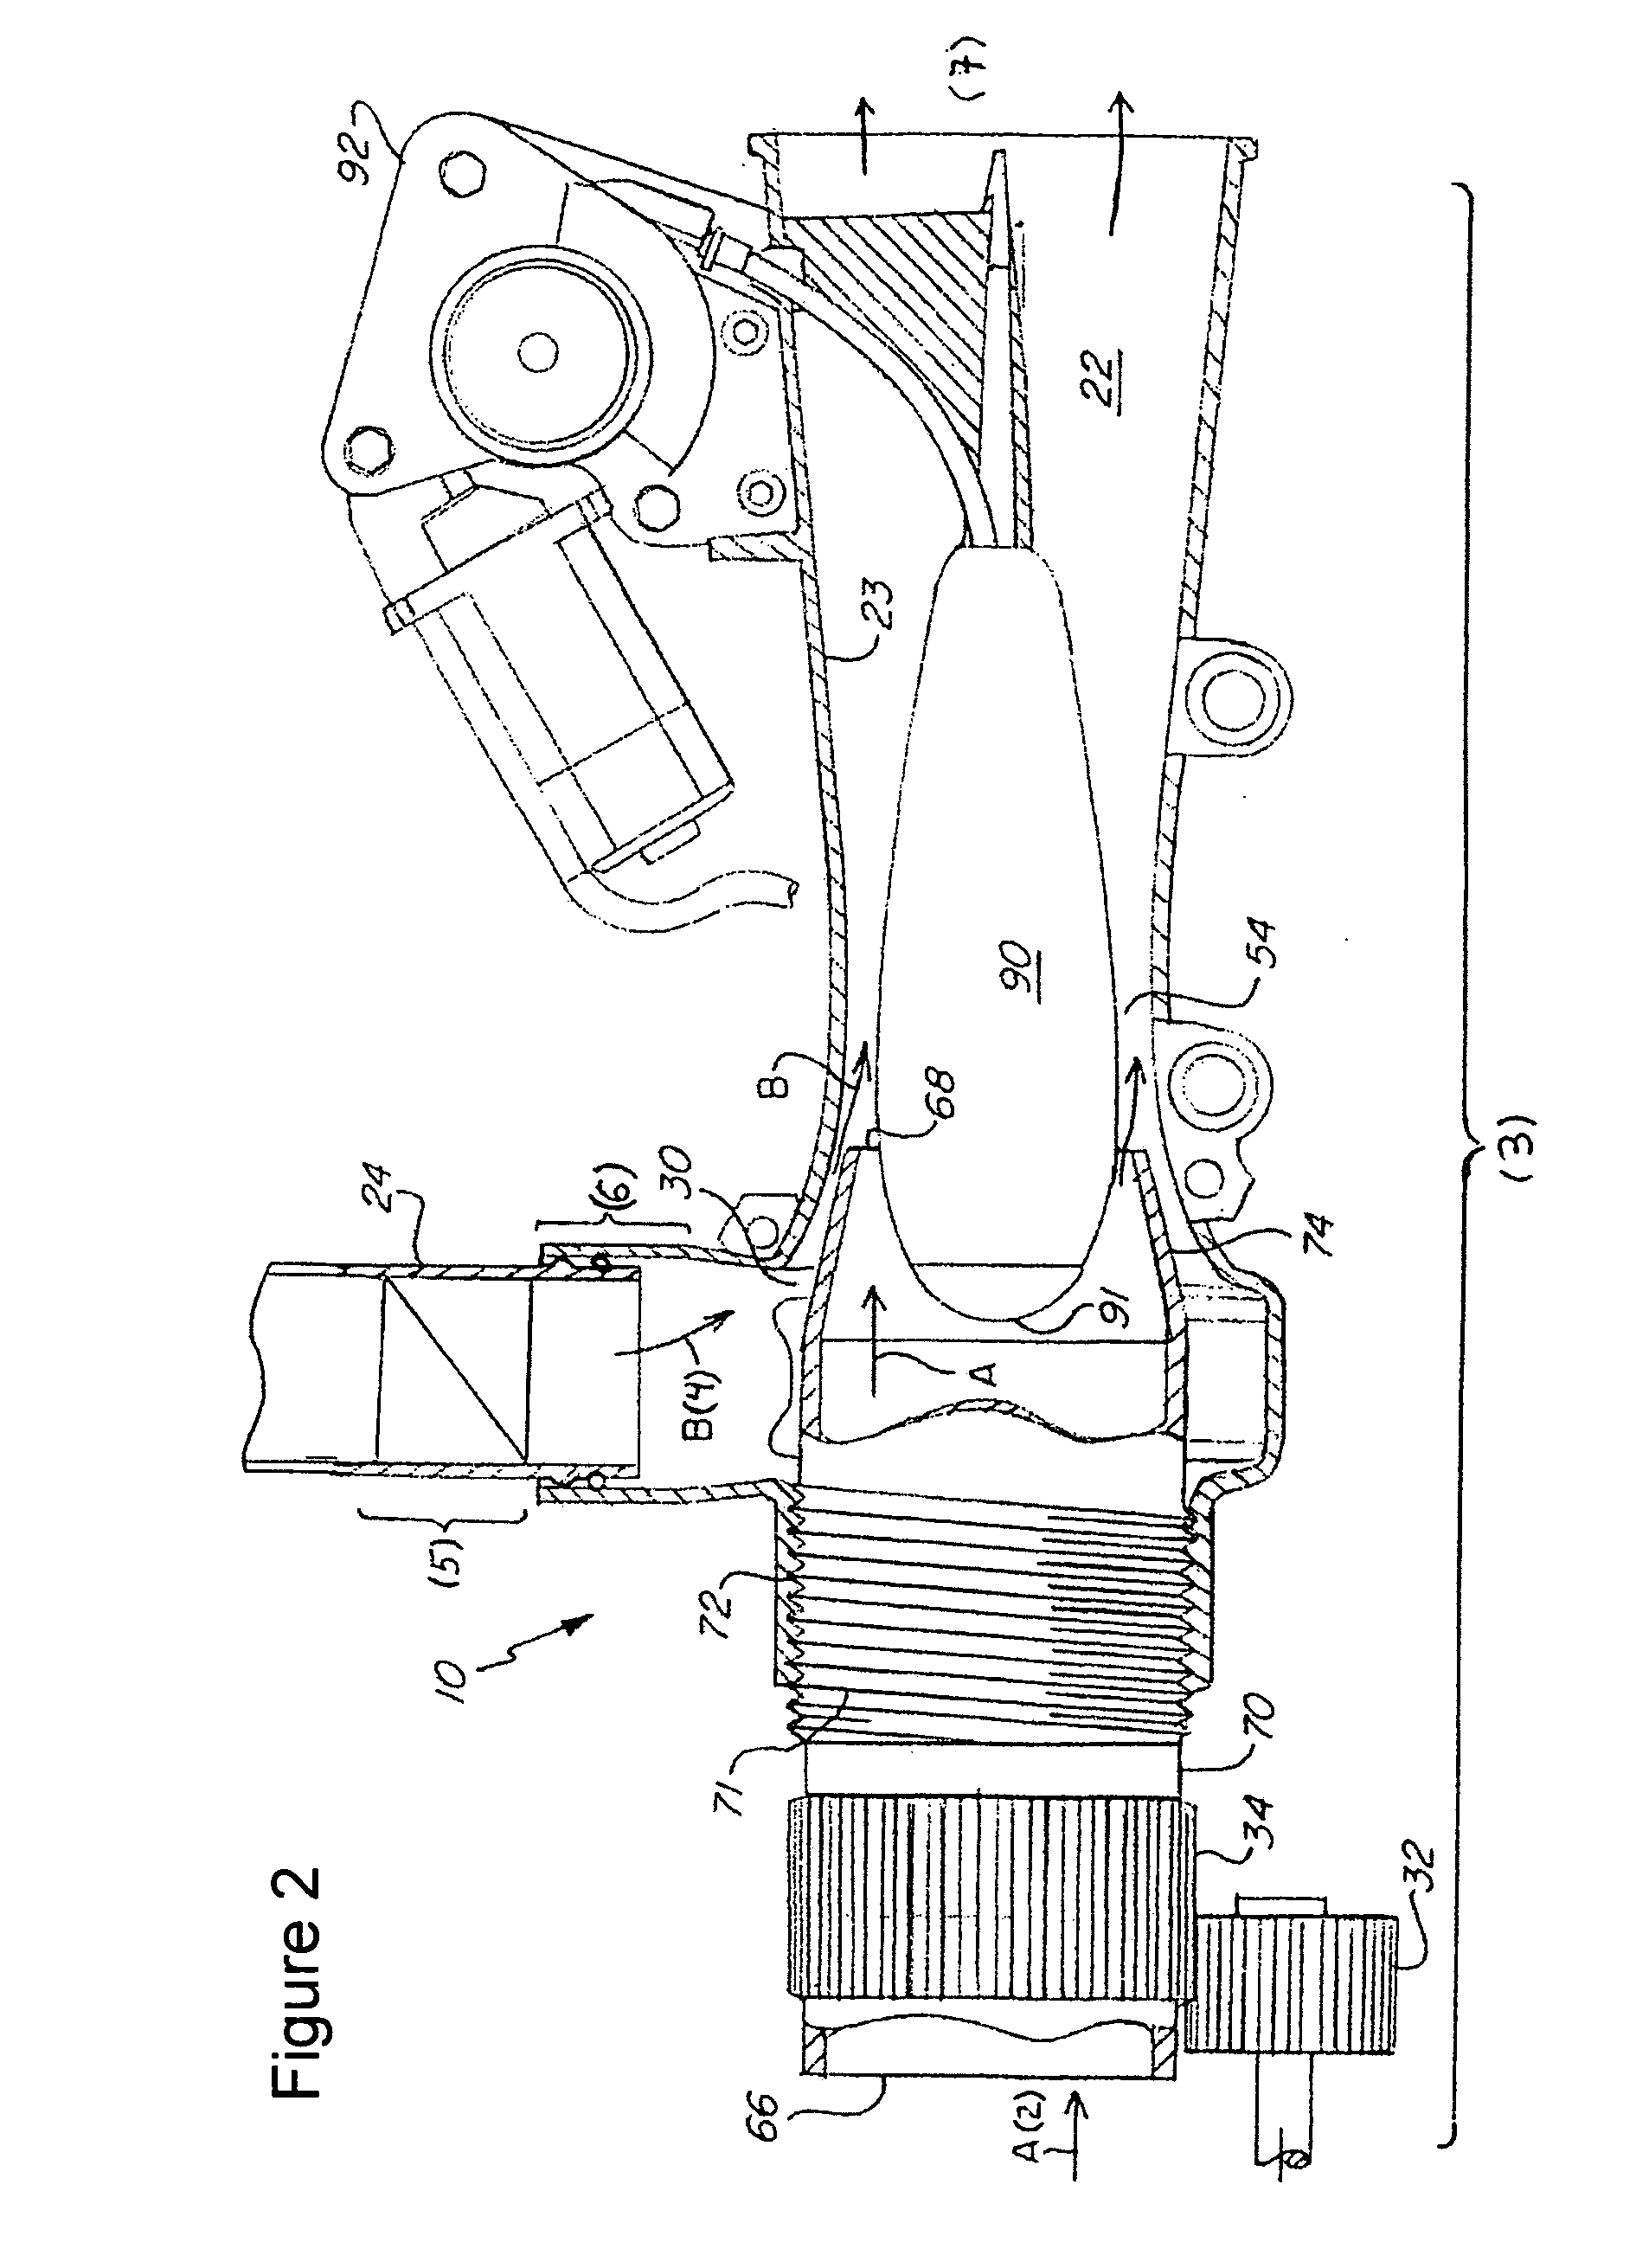 Sequential control valve